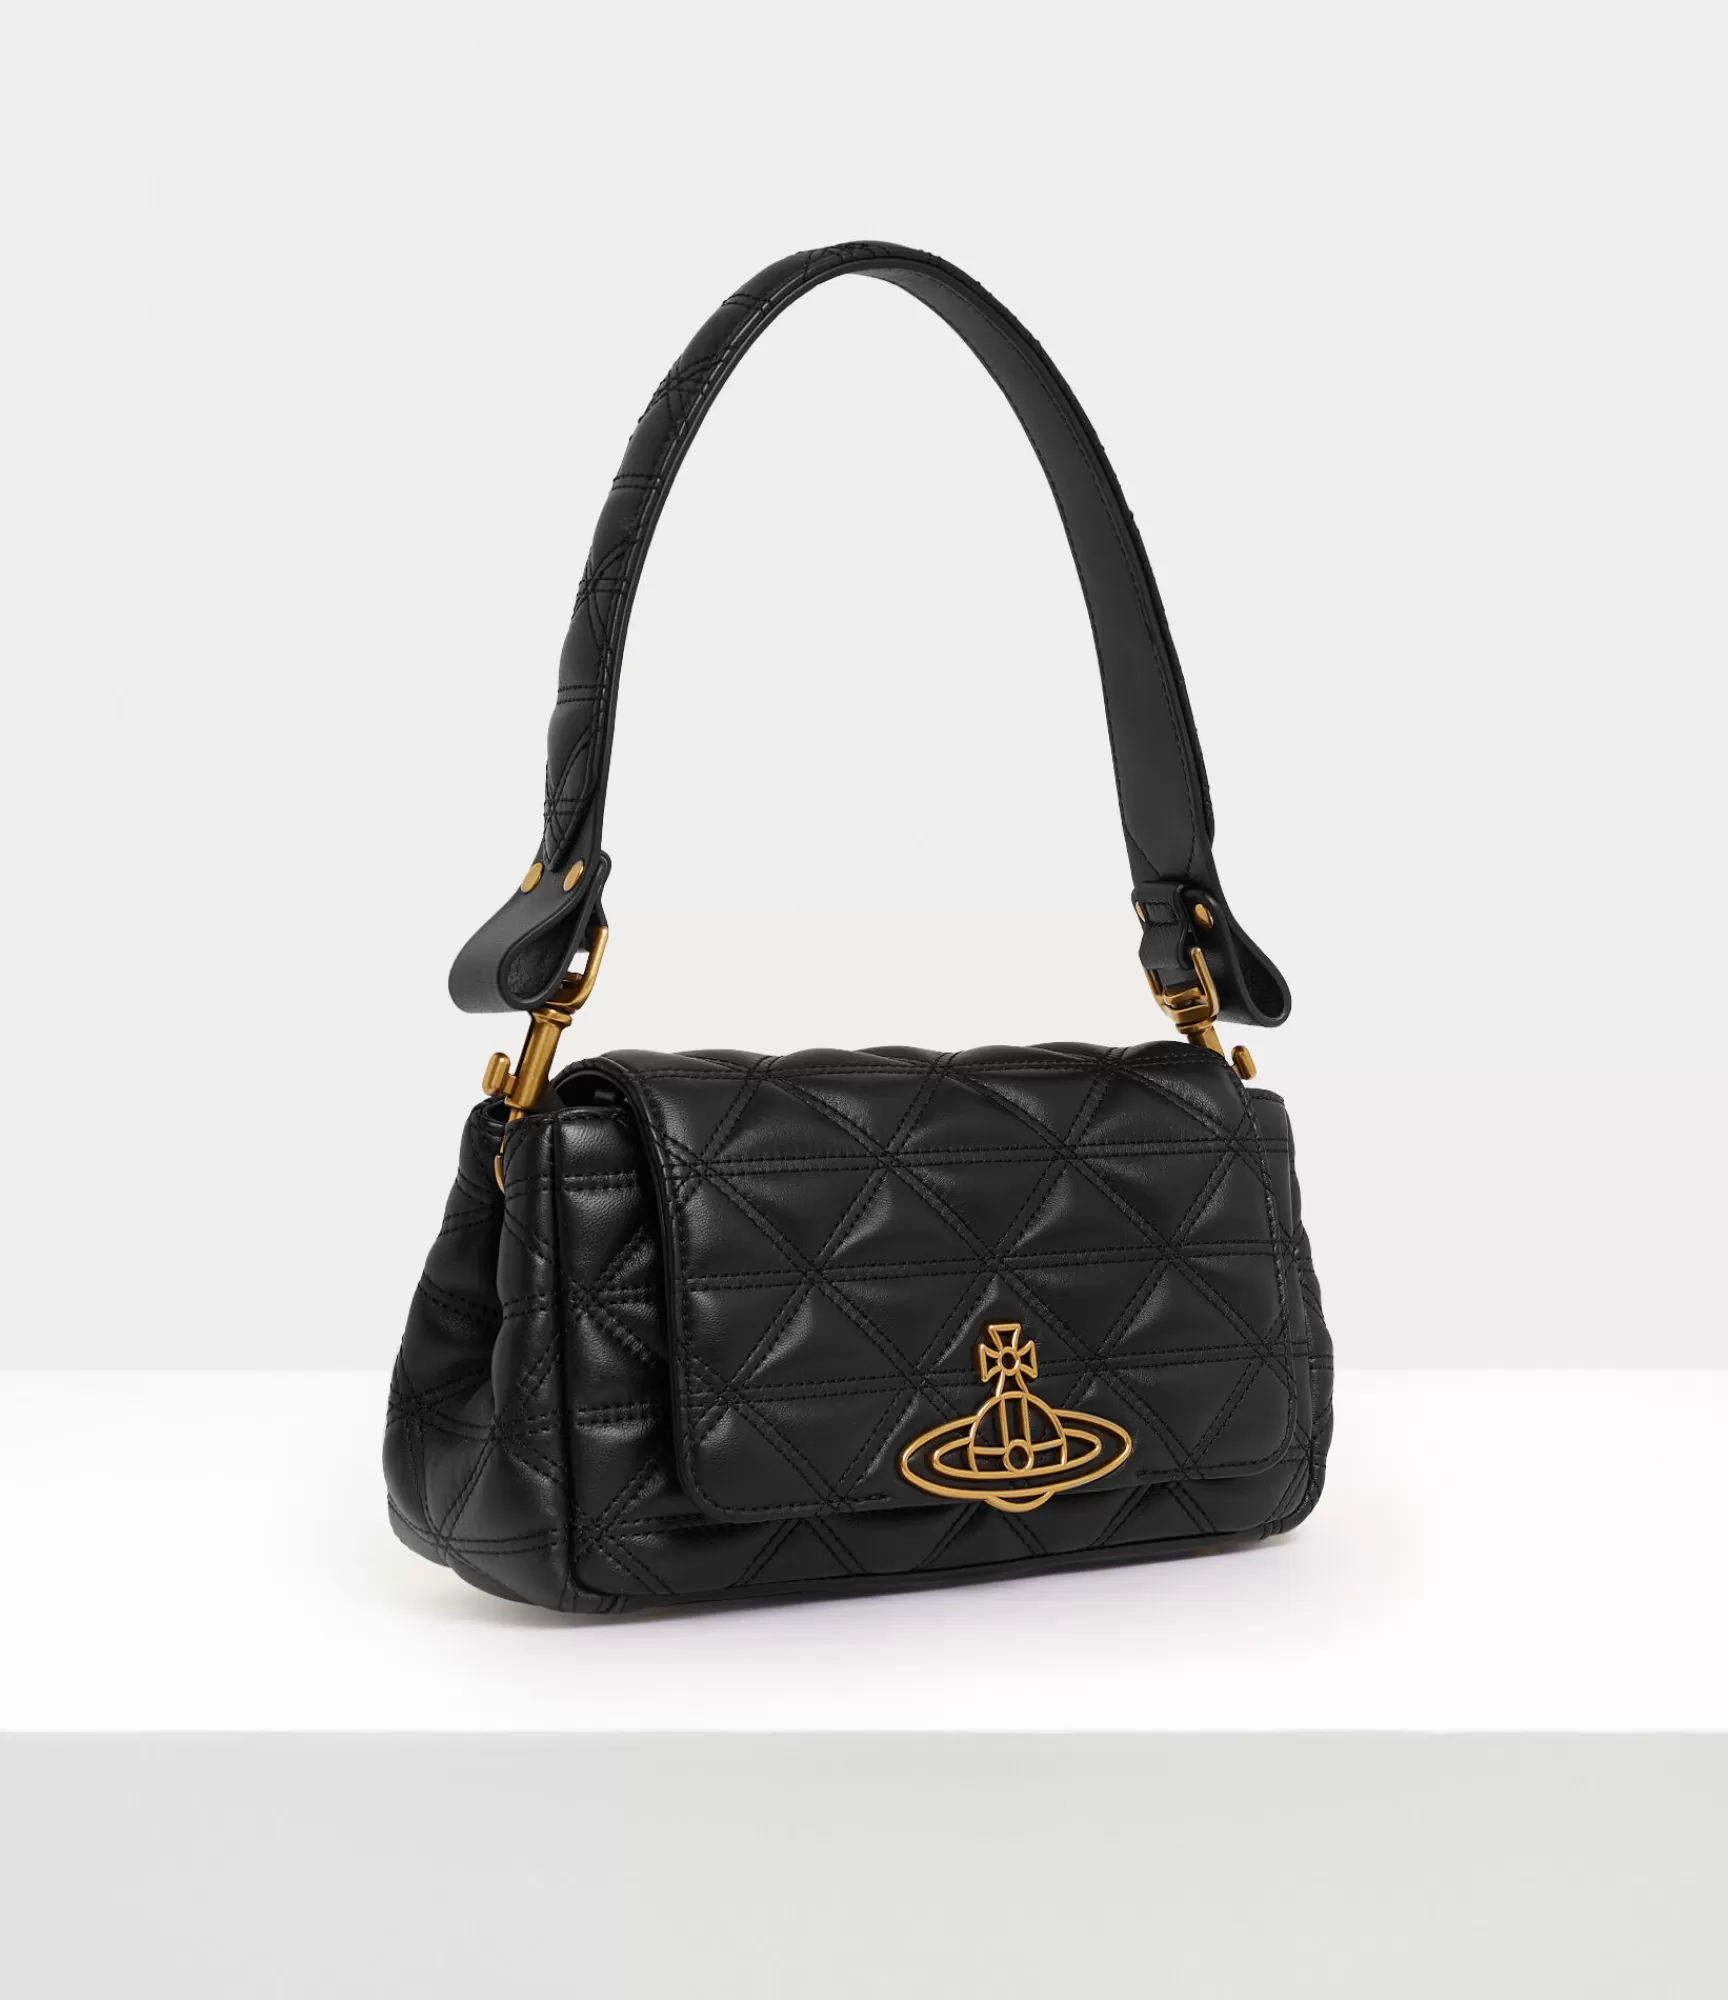 Vivienne Westwood Handbags*Hazel medium handbag Black